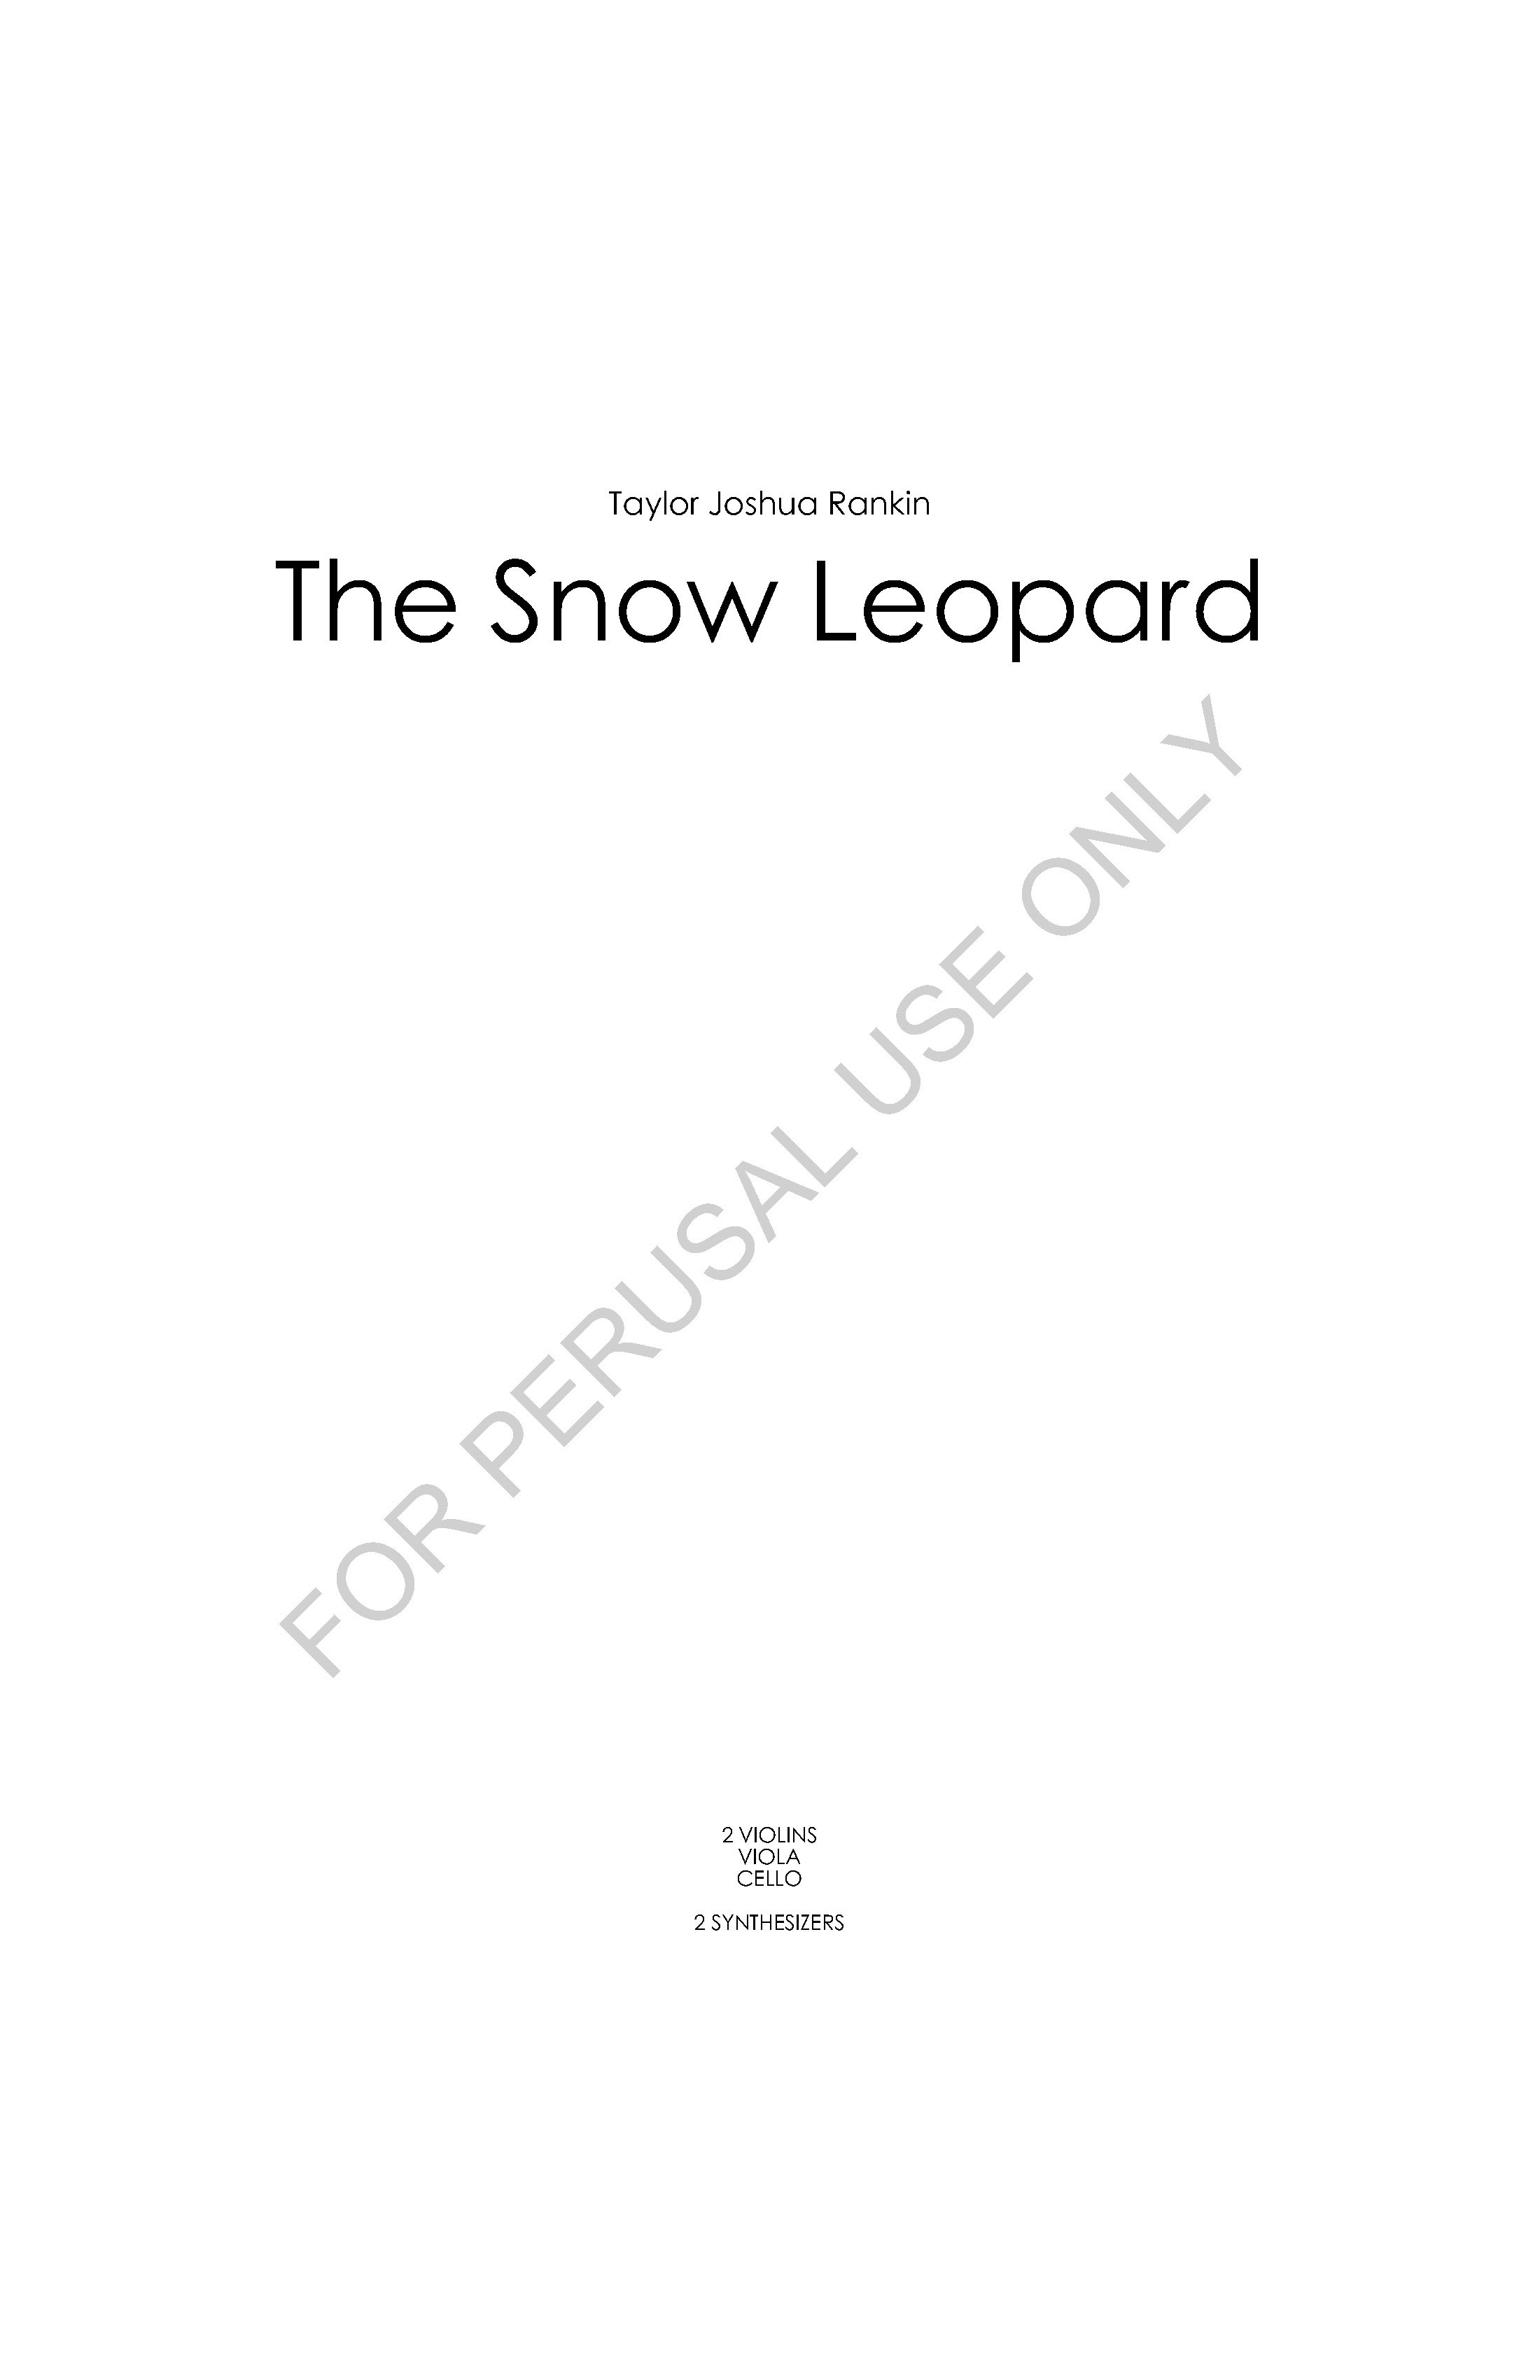 RANKIN - THE SNOW LEOPARD - Full Score_Page_1.jpg